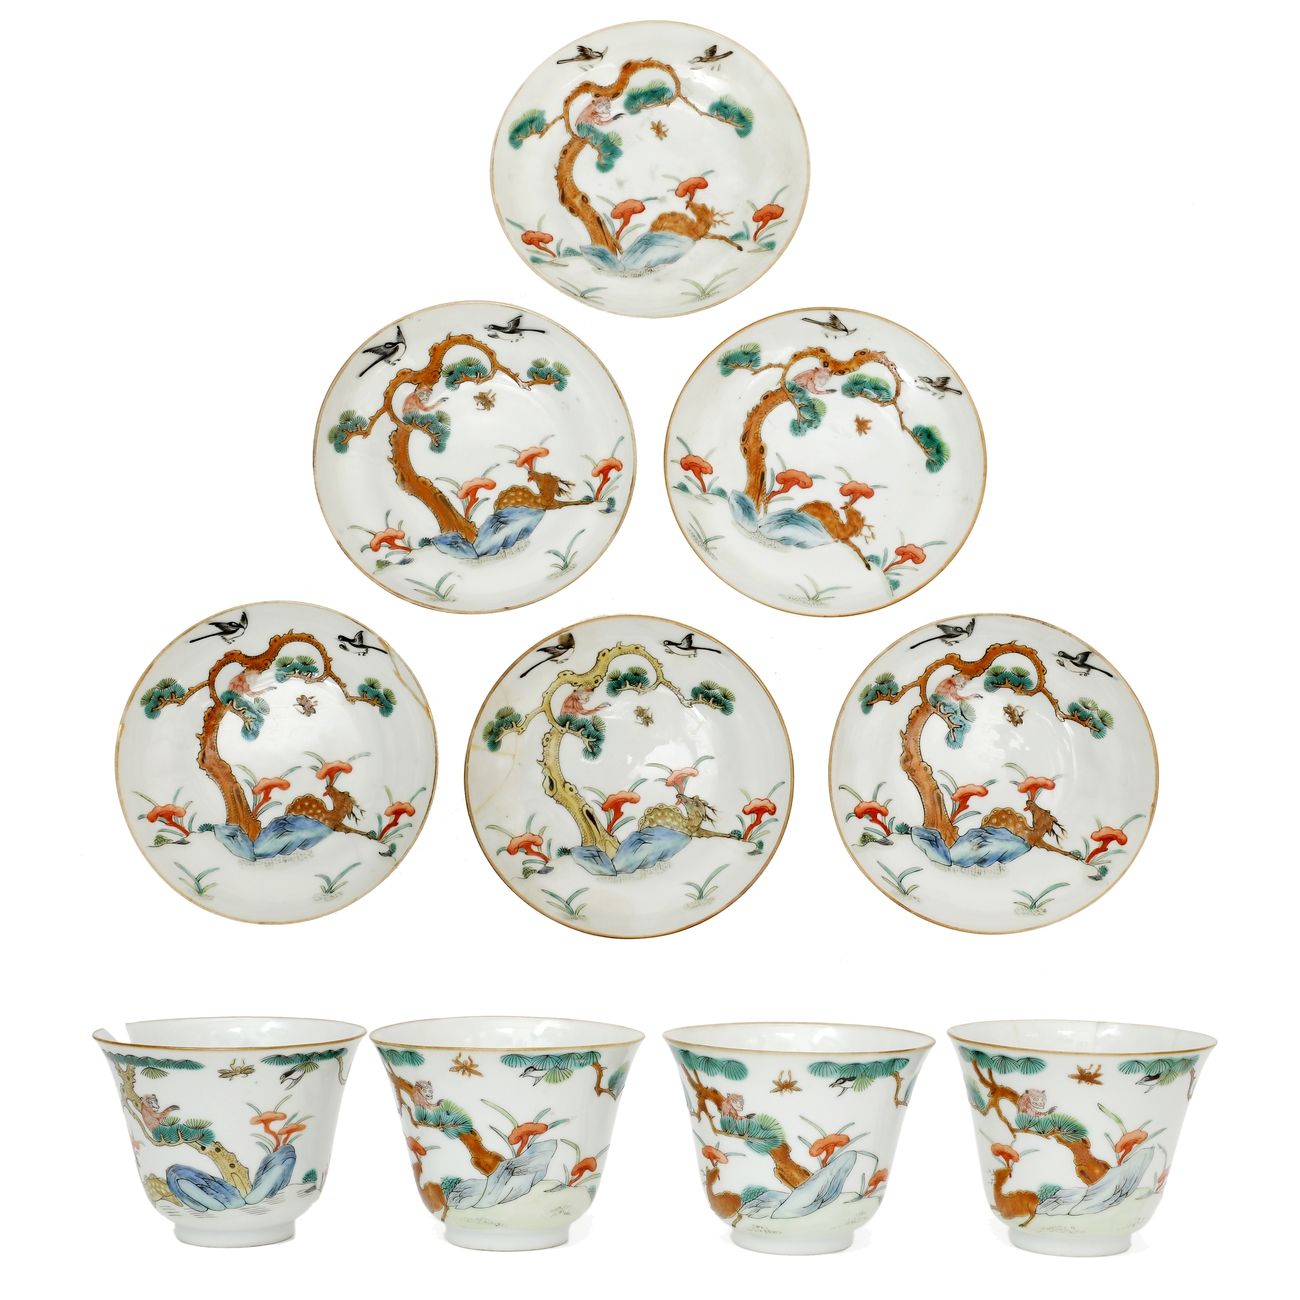 Null 中国约1900年
一套四只大瓷碗和六只碟子，用法米勒珐琅彩装饰着枝头的猴子、鹿和灵芝。
高度：7厘米
直径：16厘米
(三盆破裂，三杯破裂)